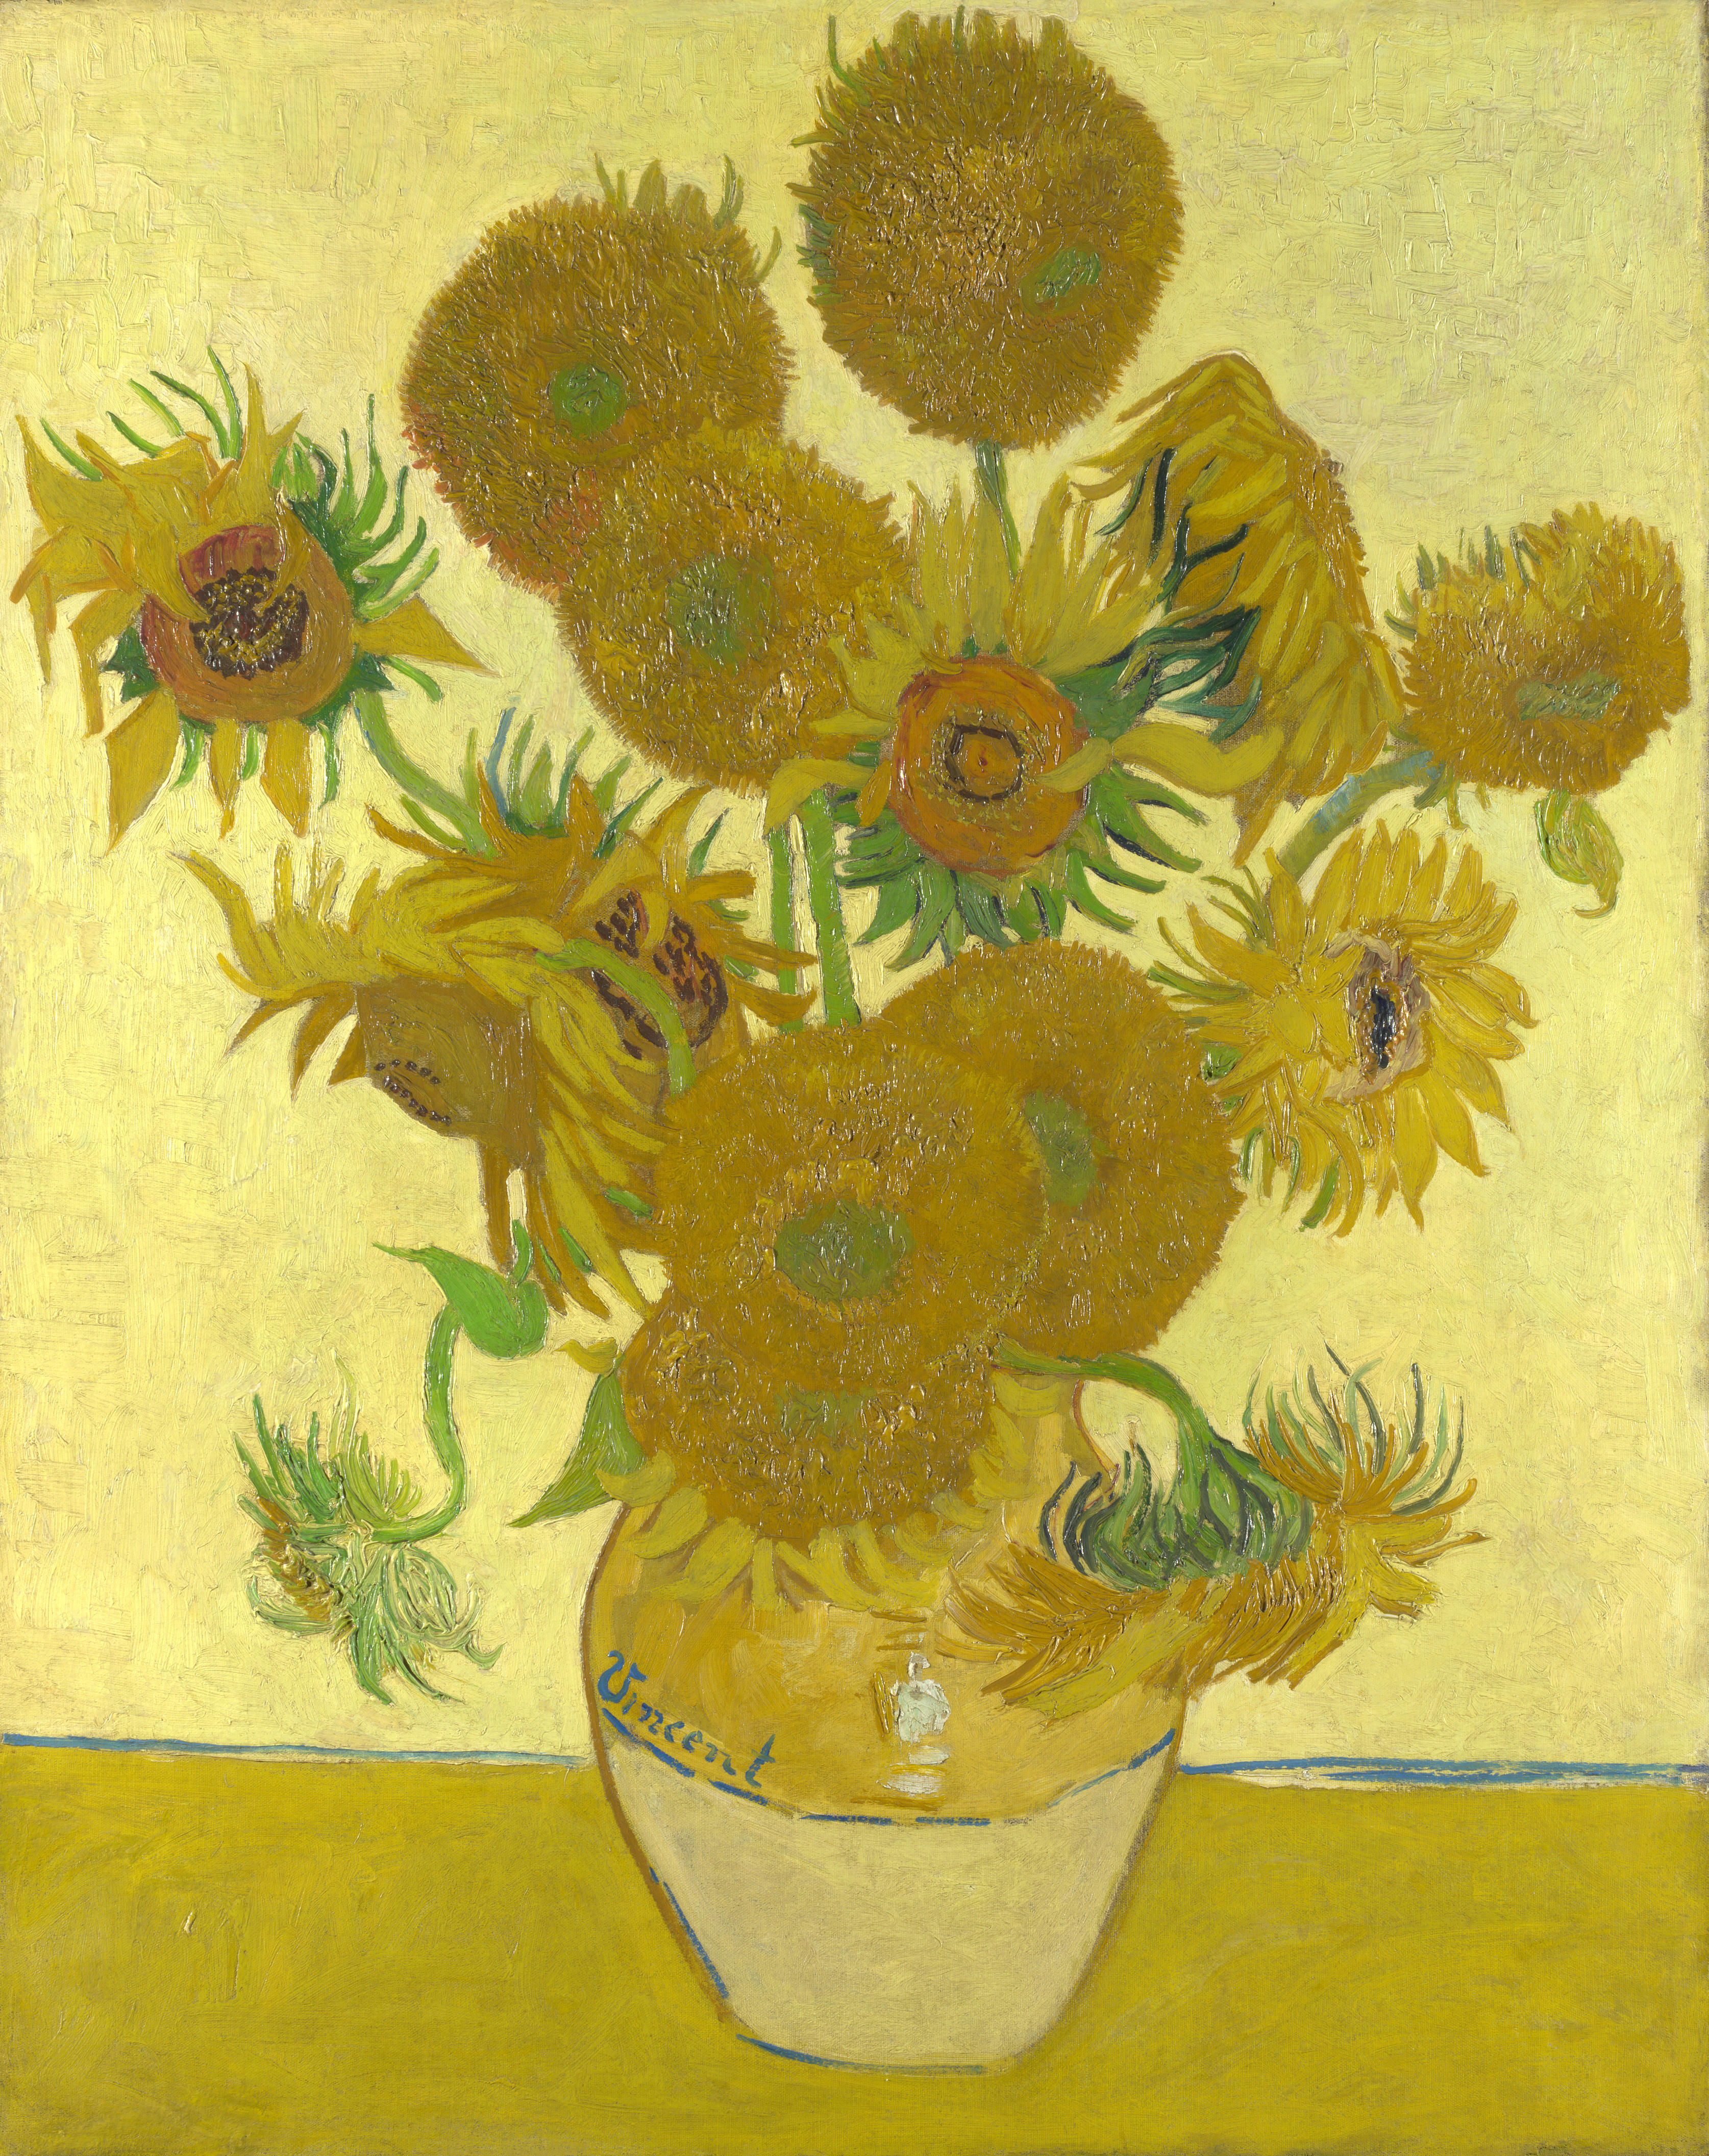 Los girasoles by Vincent van Gogh - 1888 Galería Nacional